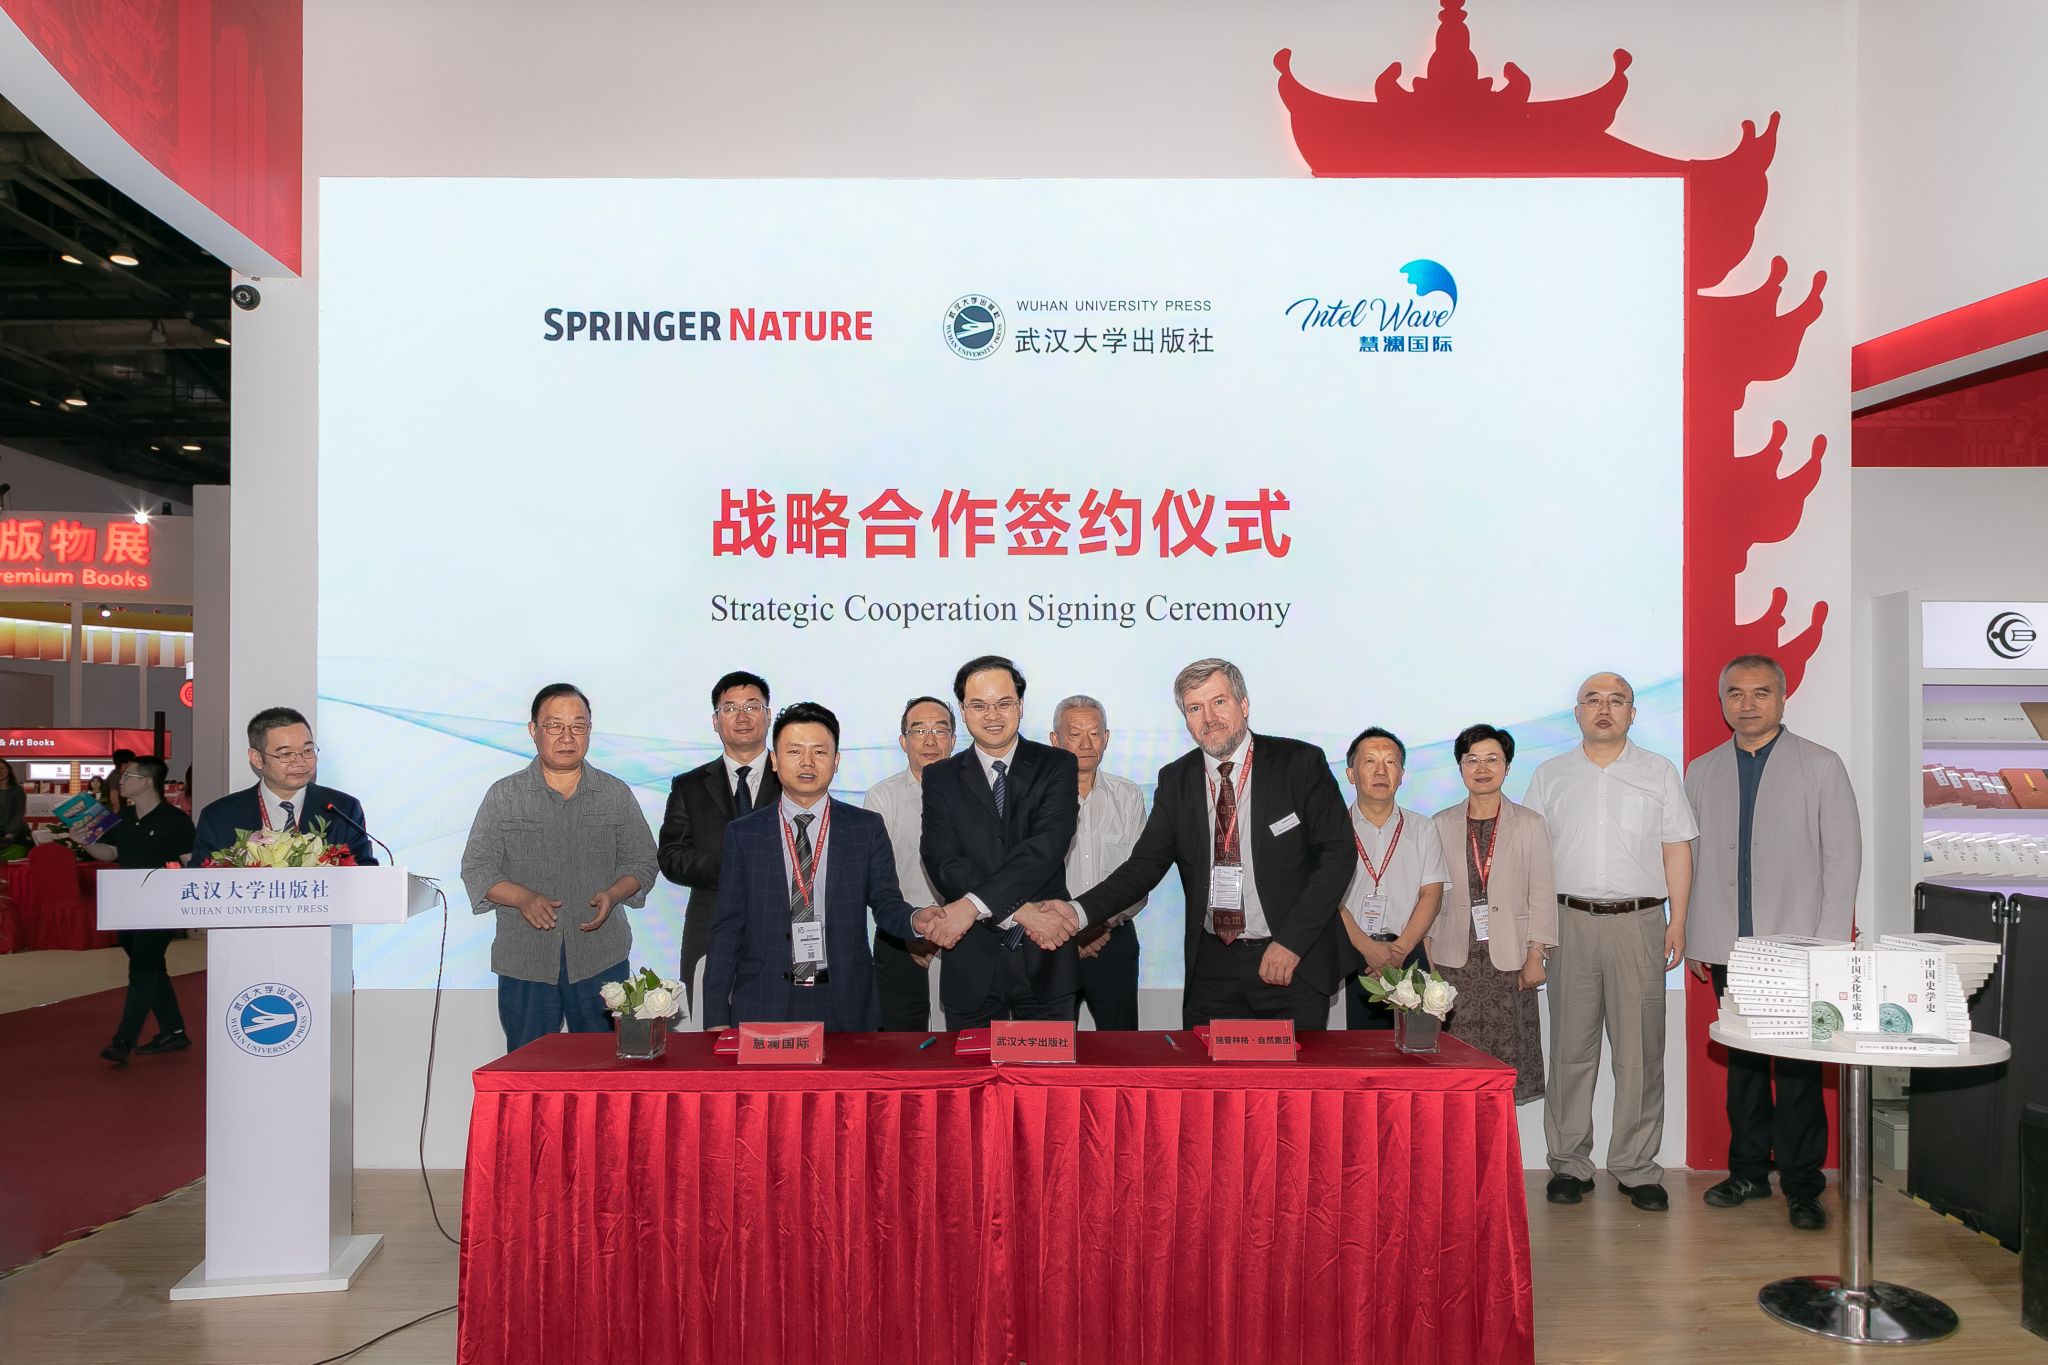 武汉大学出版社与施普林格·自然集团签订版权转让暨战略合作协议